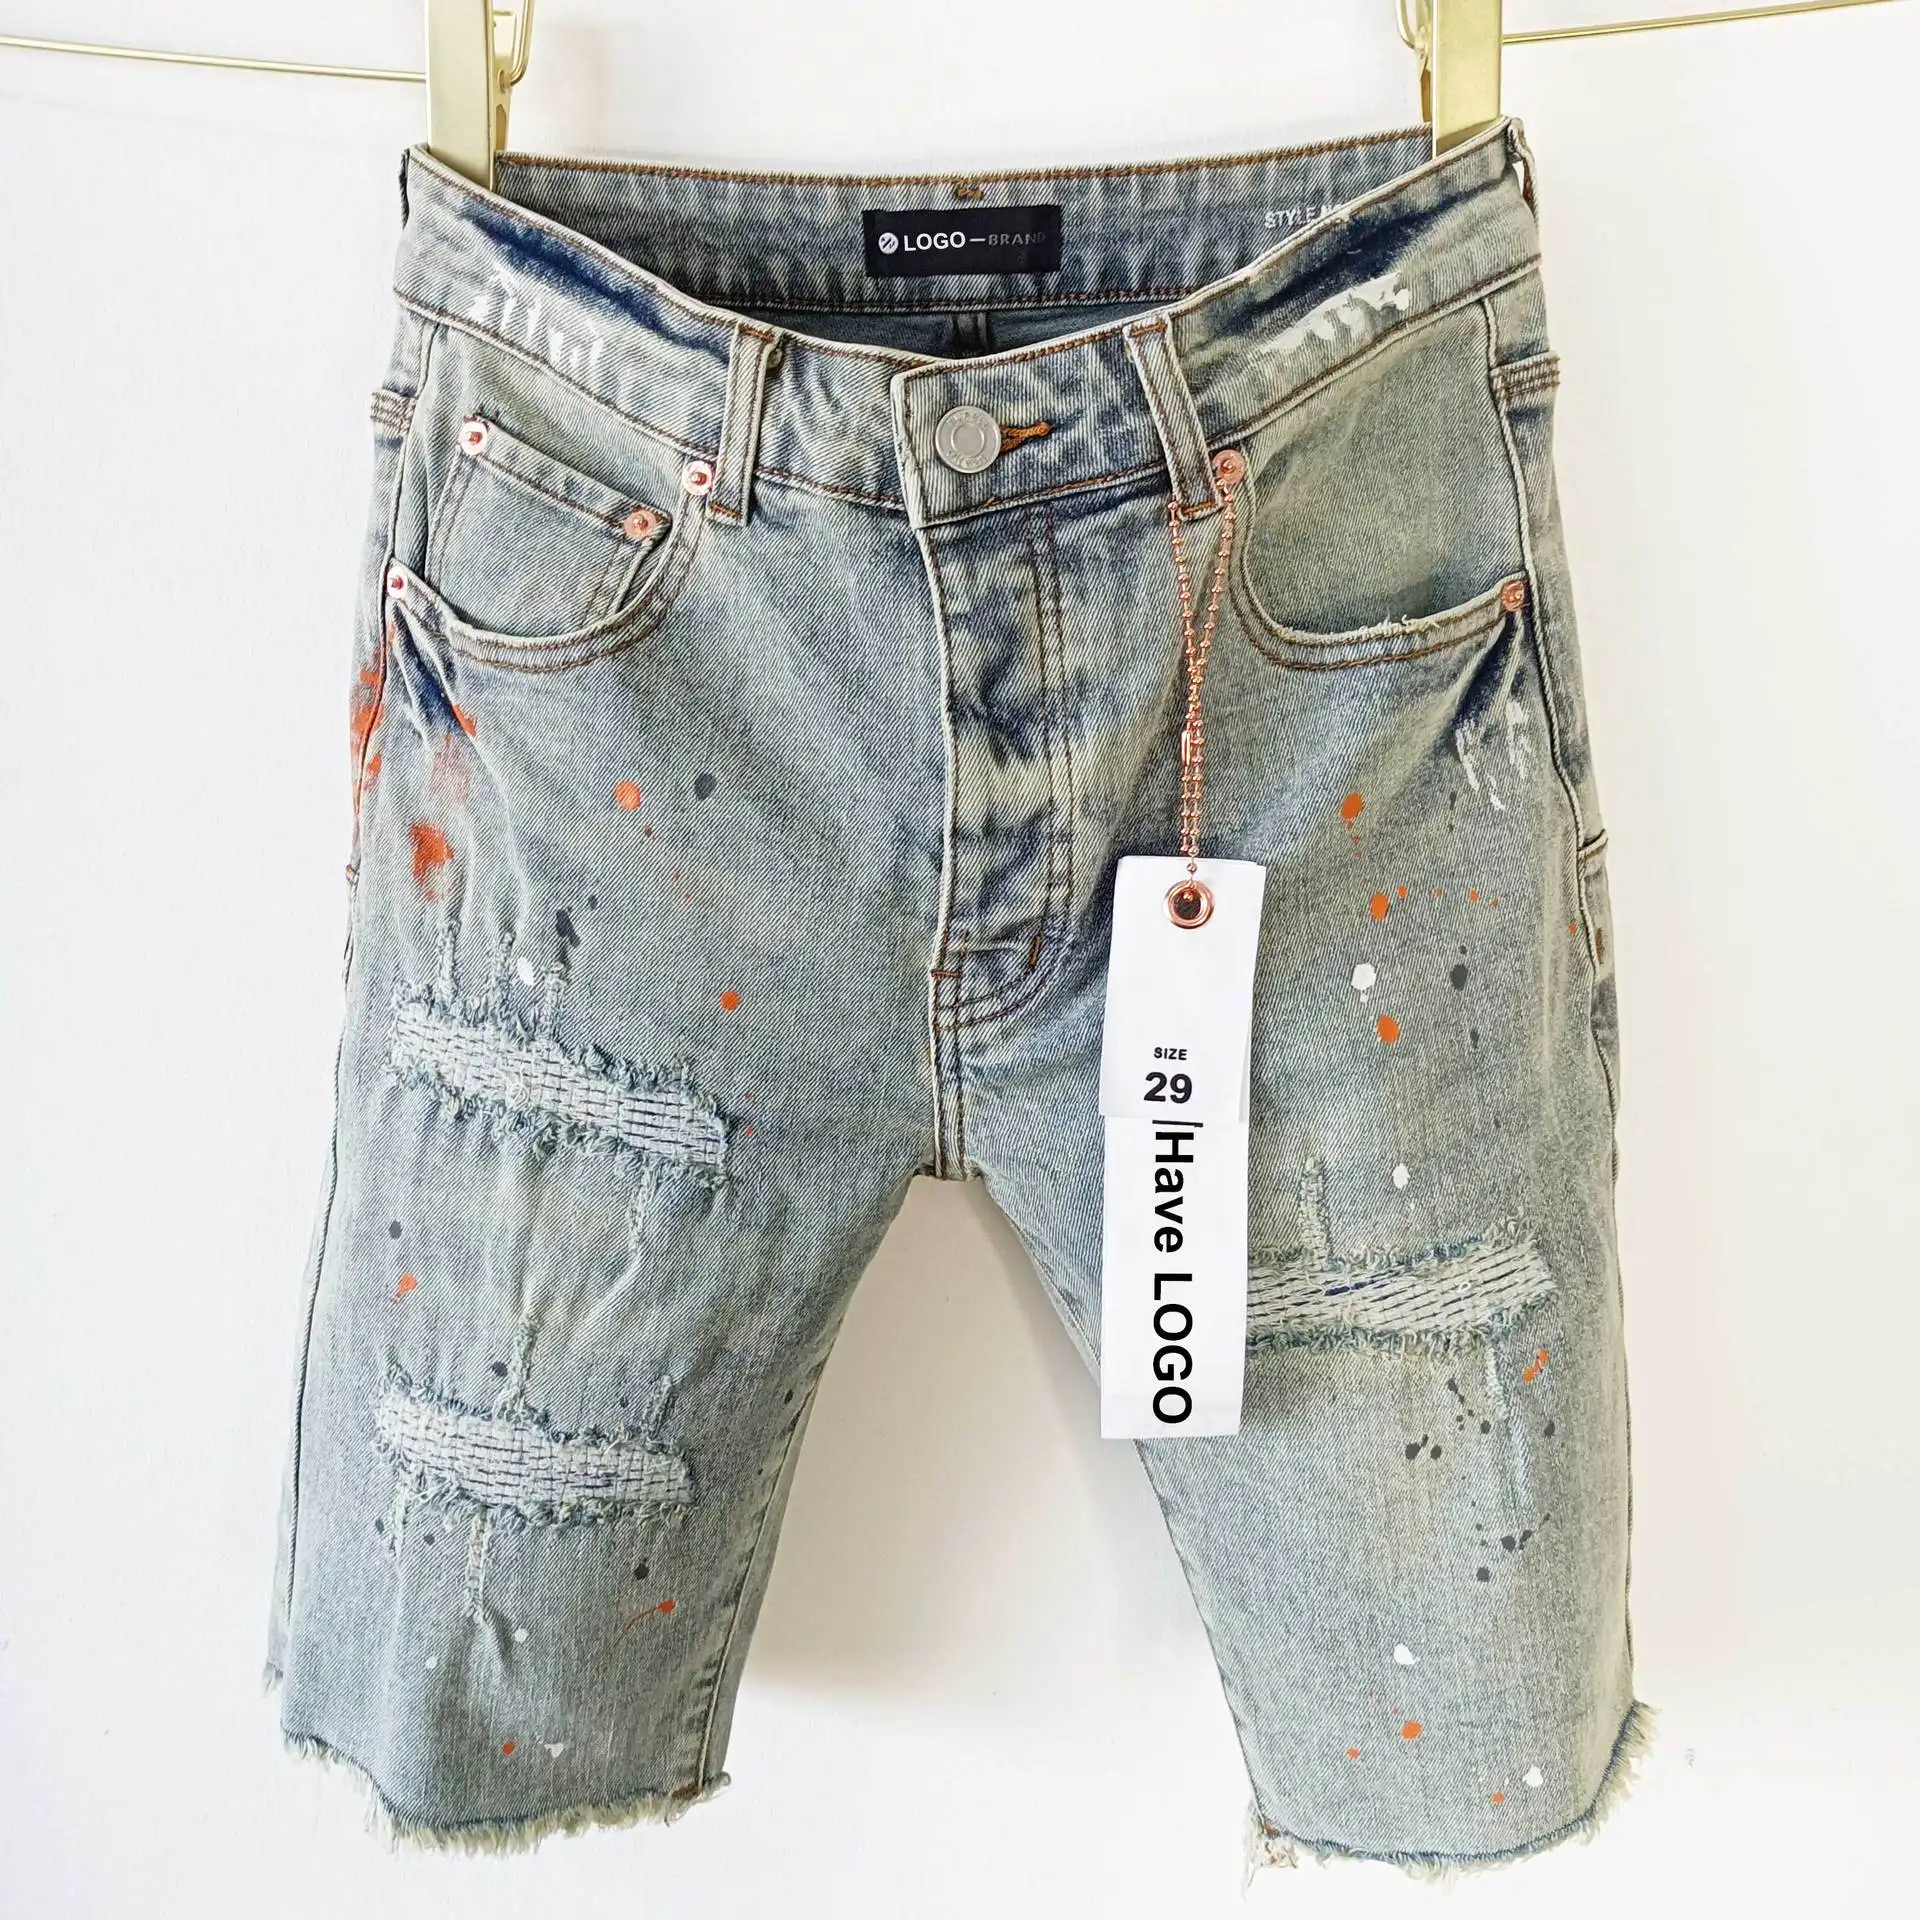 Фиолетовый бренд продает американские рваные джинсовые шорты больших размеров в стиле хип-хоп